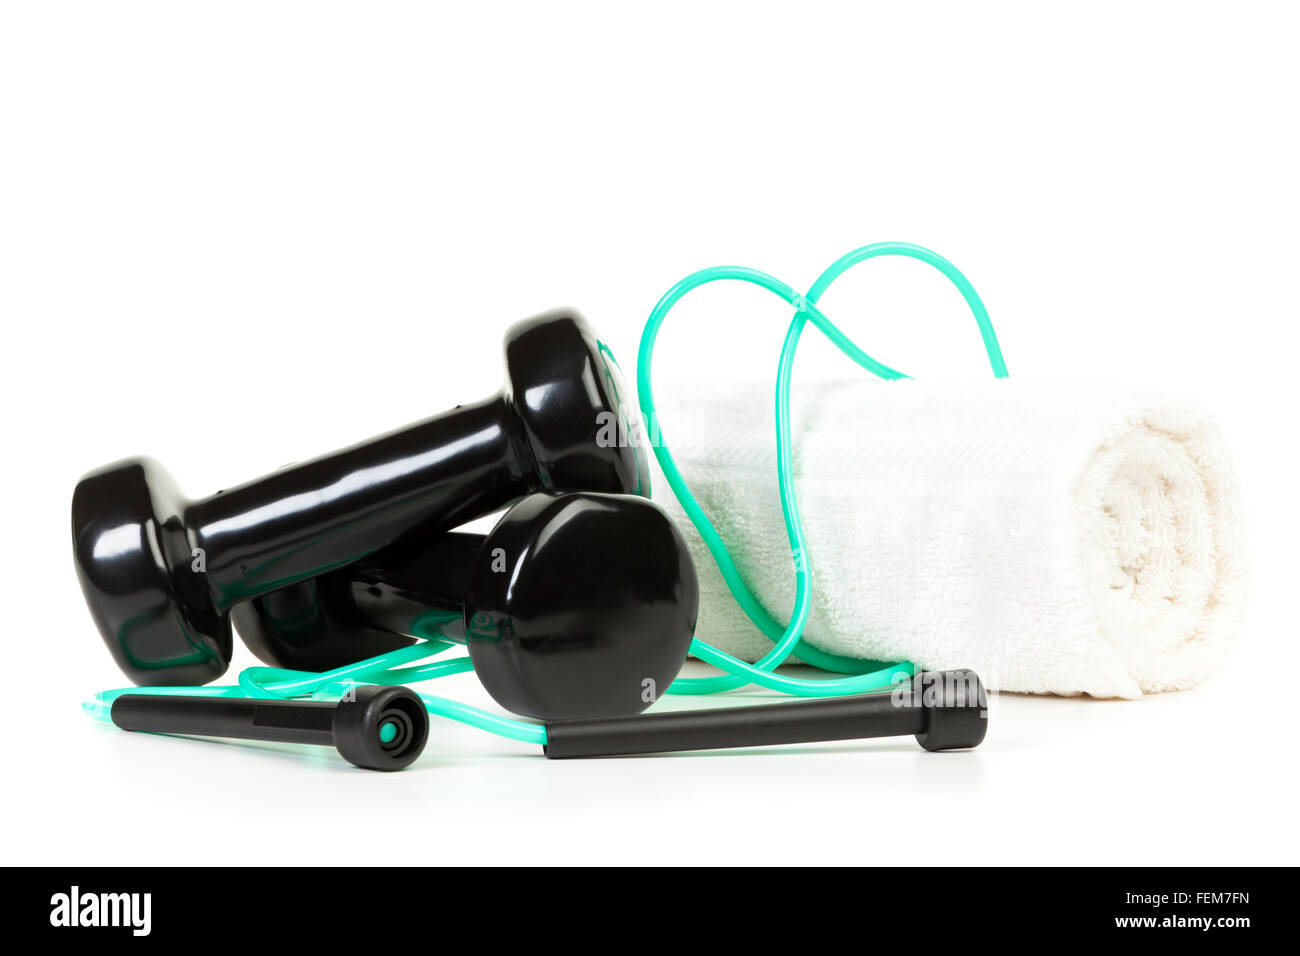 Ejercicio corporal - equipo de pesas, cuerda y una toalla sobre fondo blanco. Foto de stock